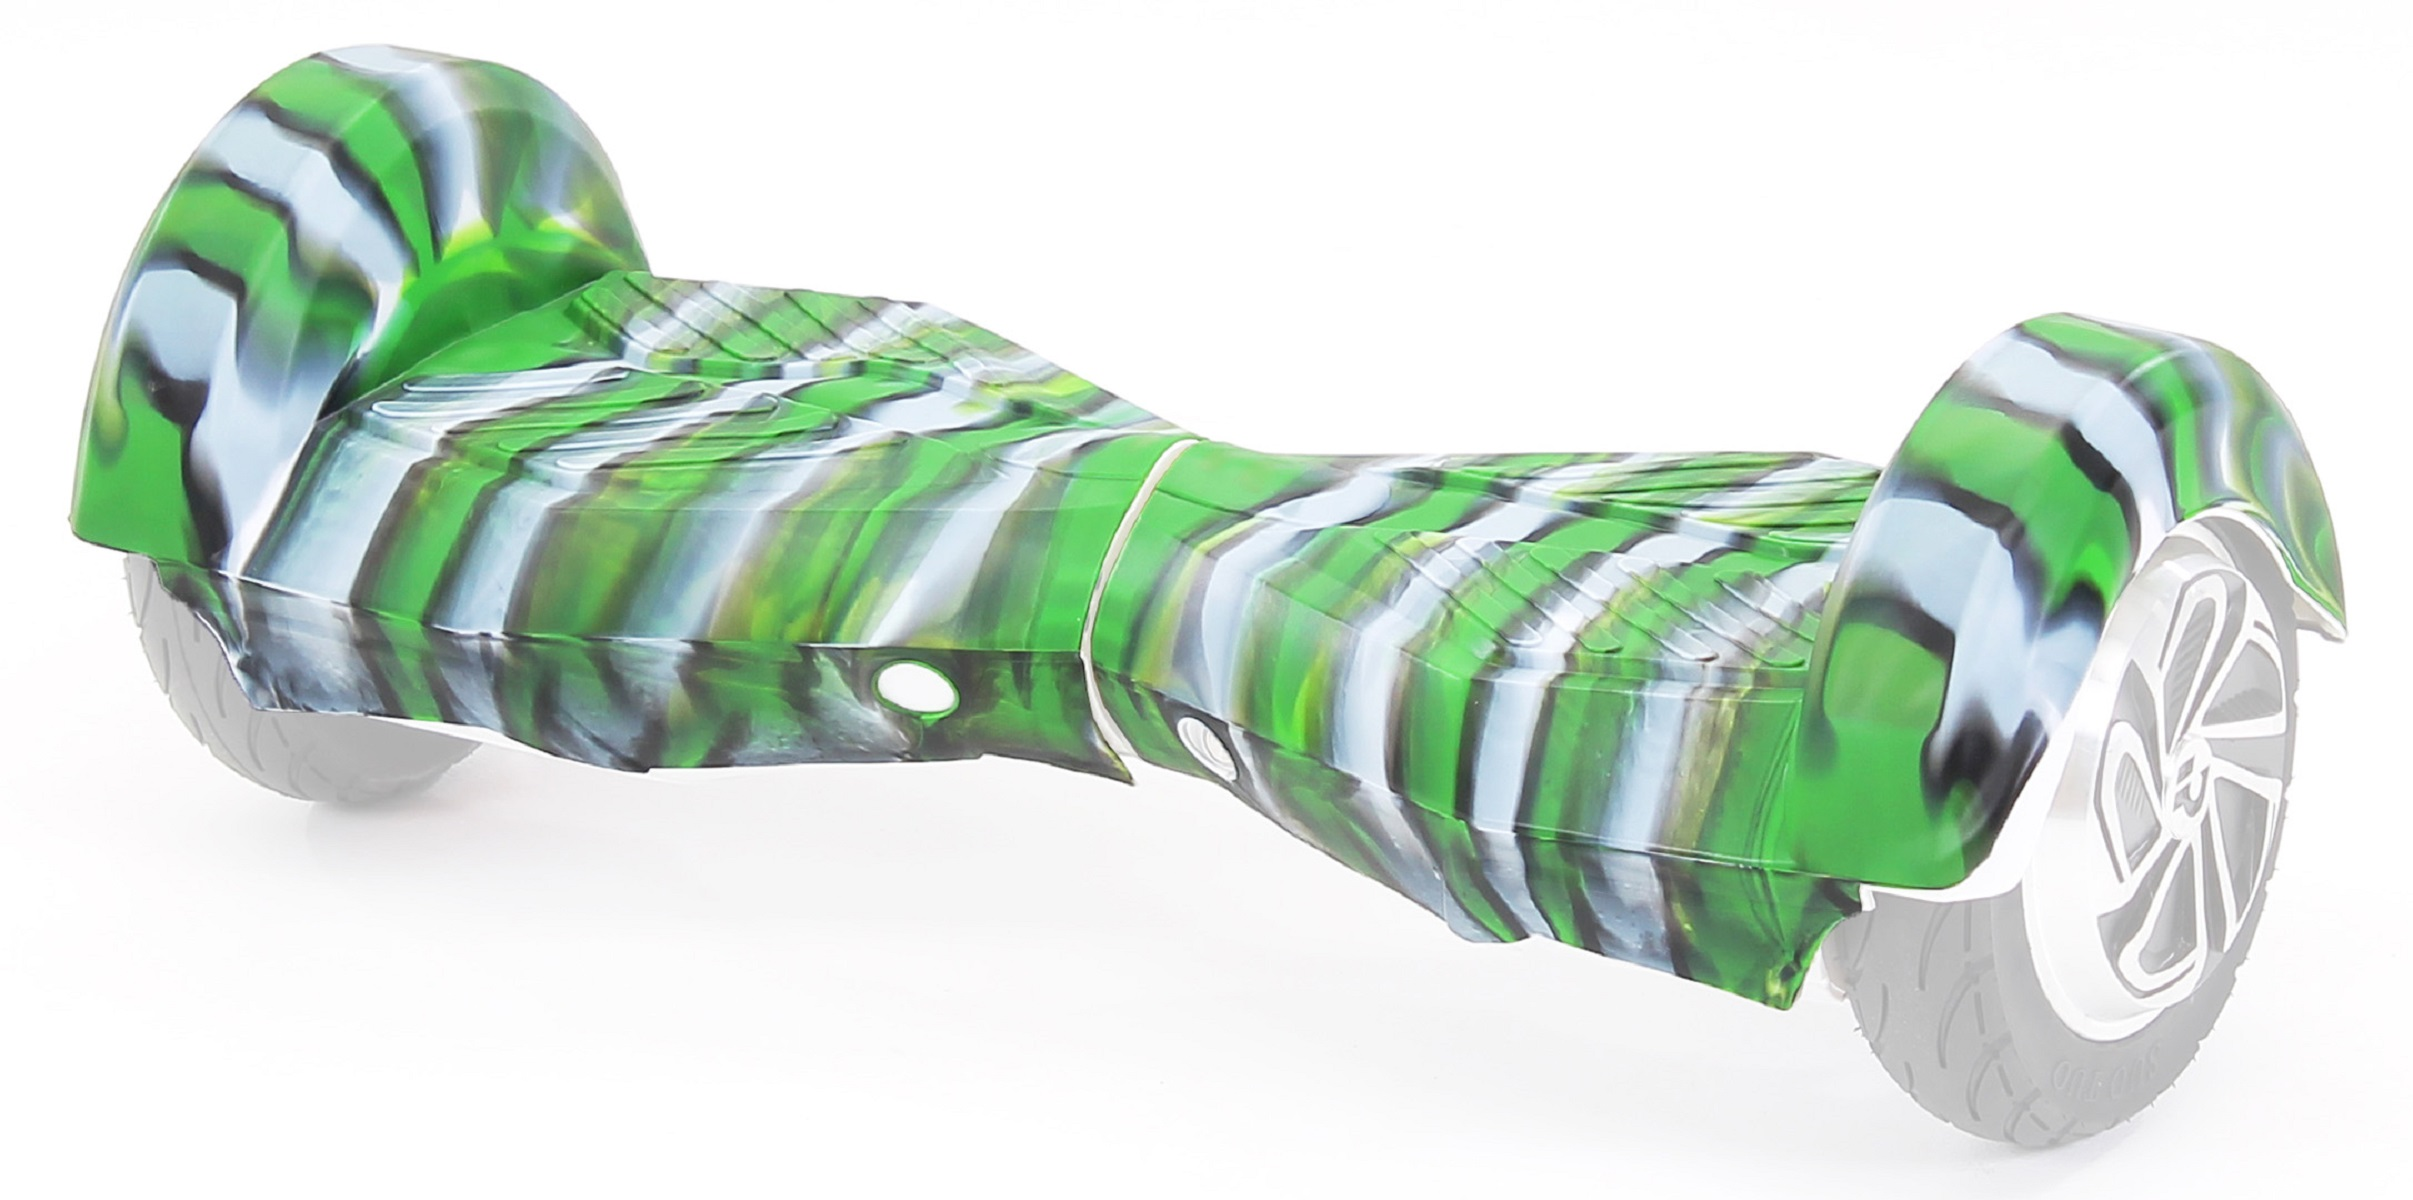 Hoverboard camouflage Zubehör, ROBWAY Hoverboard Schutzhülle Silikon grün